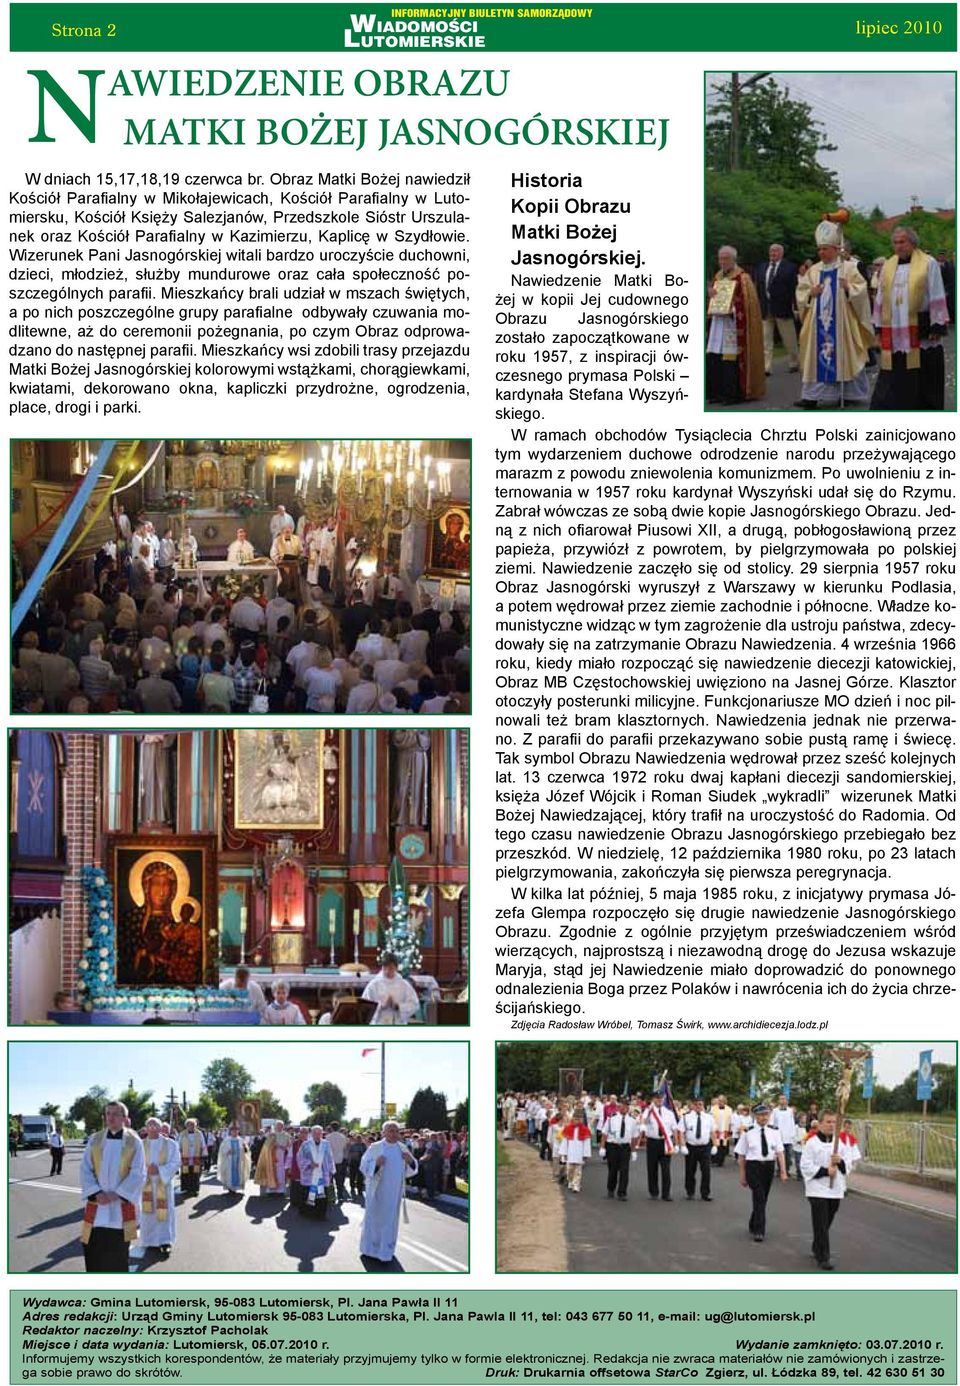 Kaplicę w Szydłowie. Wizerunek Pani Jasnogórskiej witali bardzo uroczyście duchowni, dzieci, młodzież, służby mundurowe oraz cała społeczność poszczególnych parafii.